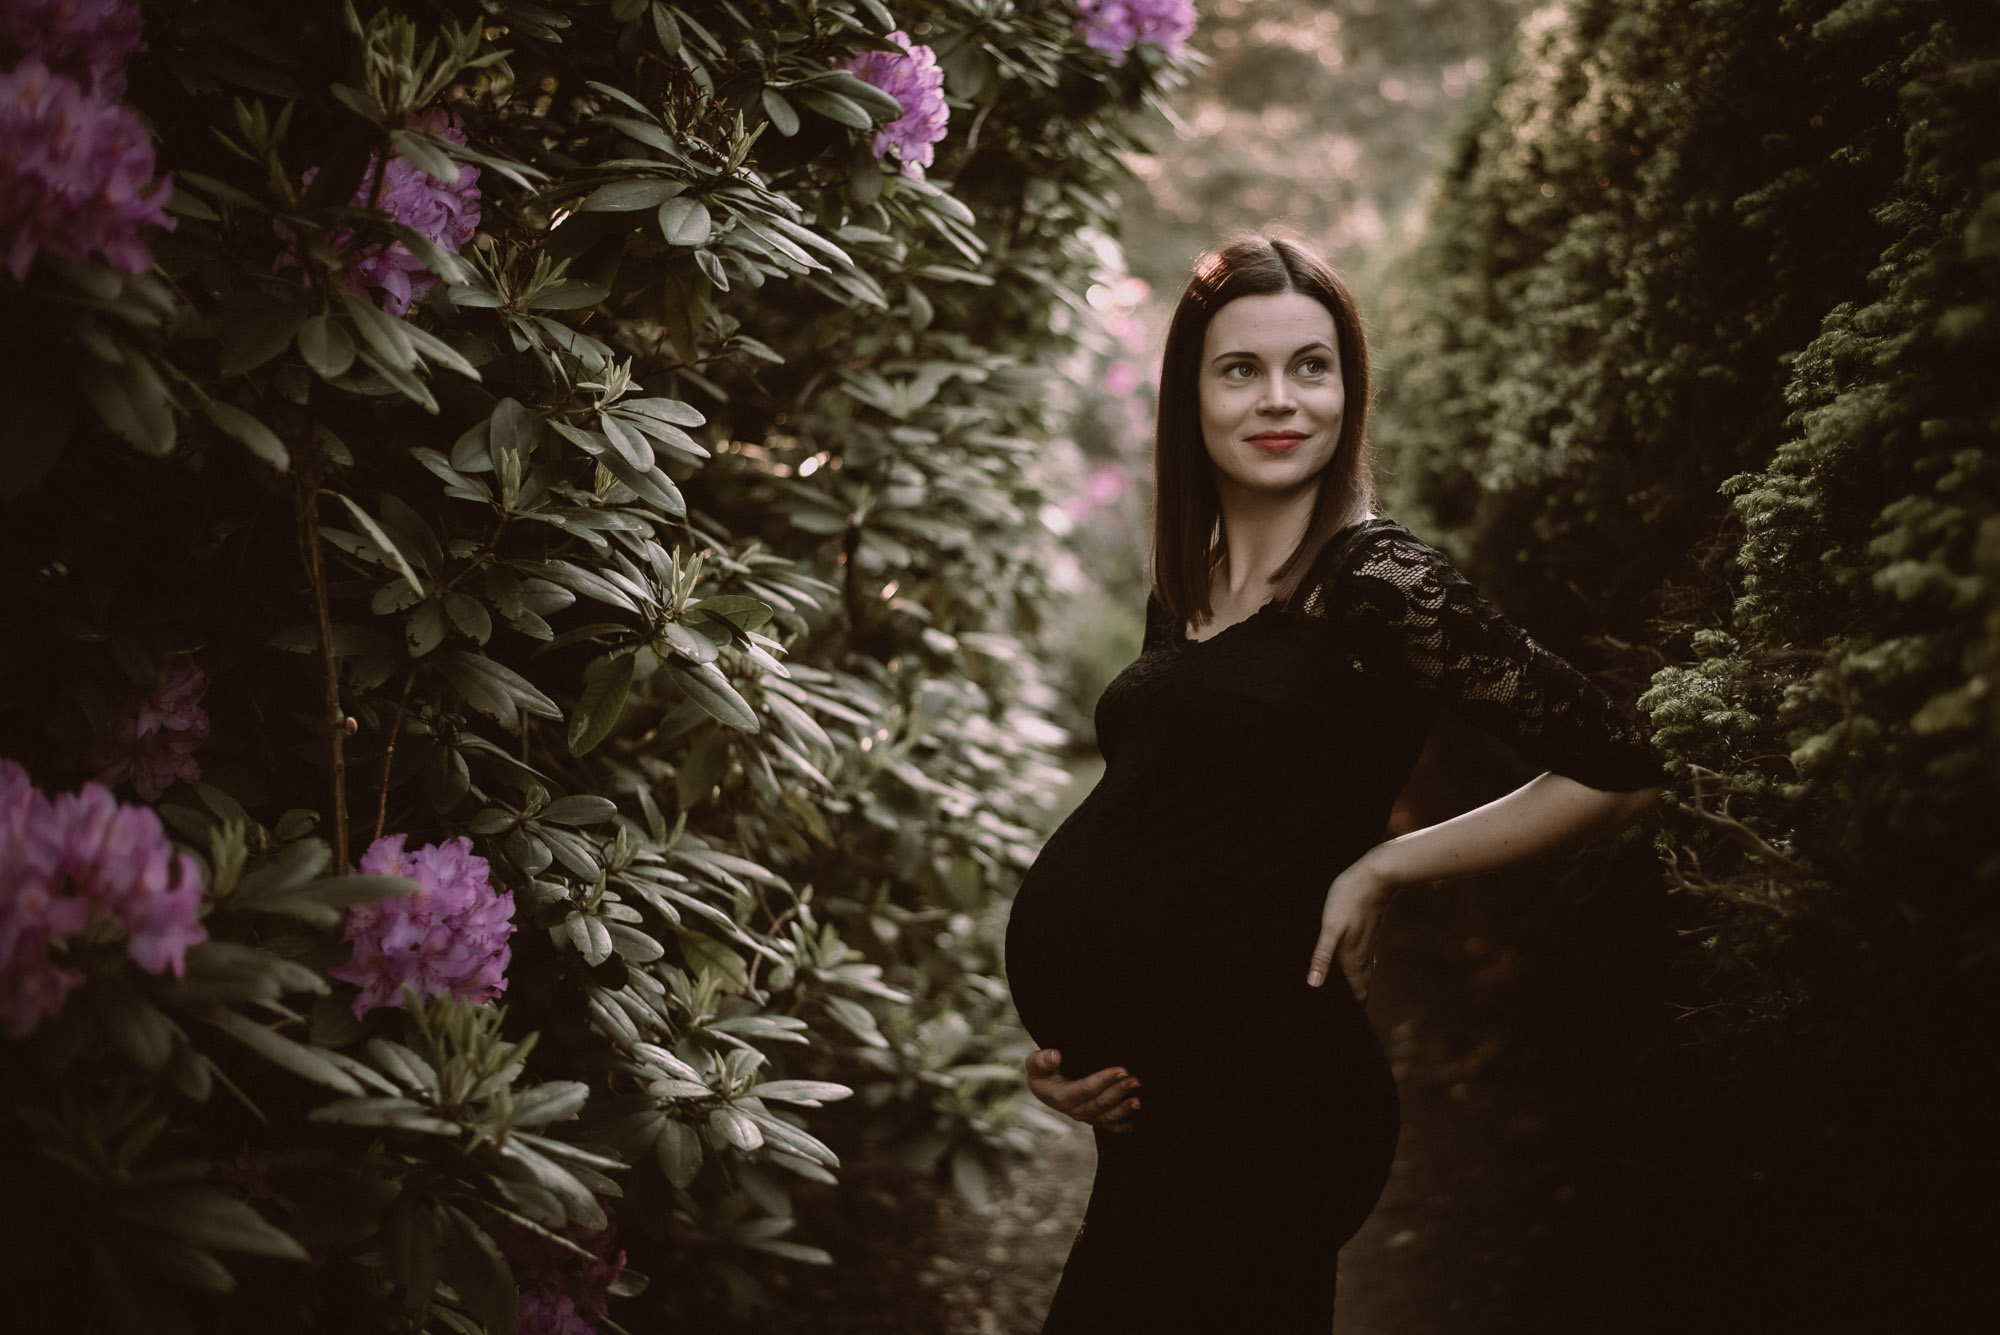 Monika Borlin Photography sesja ciążowa brzuszkowa w ogrodzie plenerze artystyczna klimatyczna warszawa mazowieckie